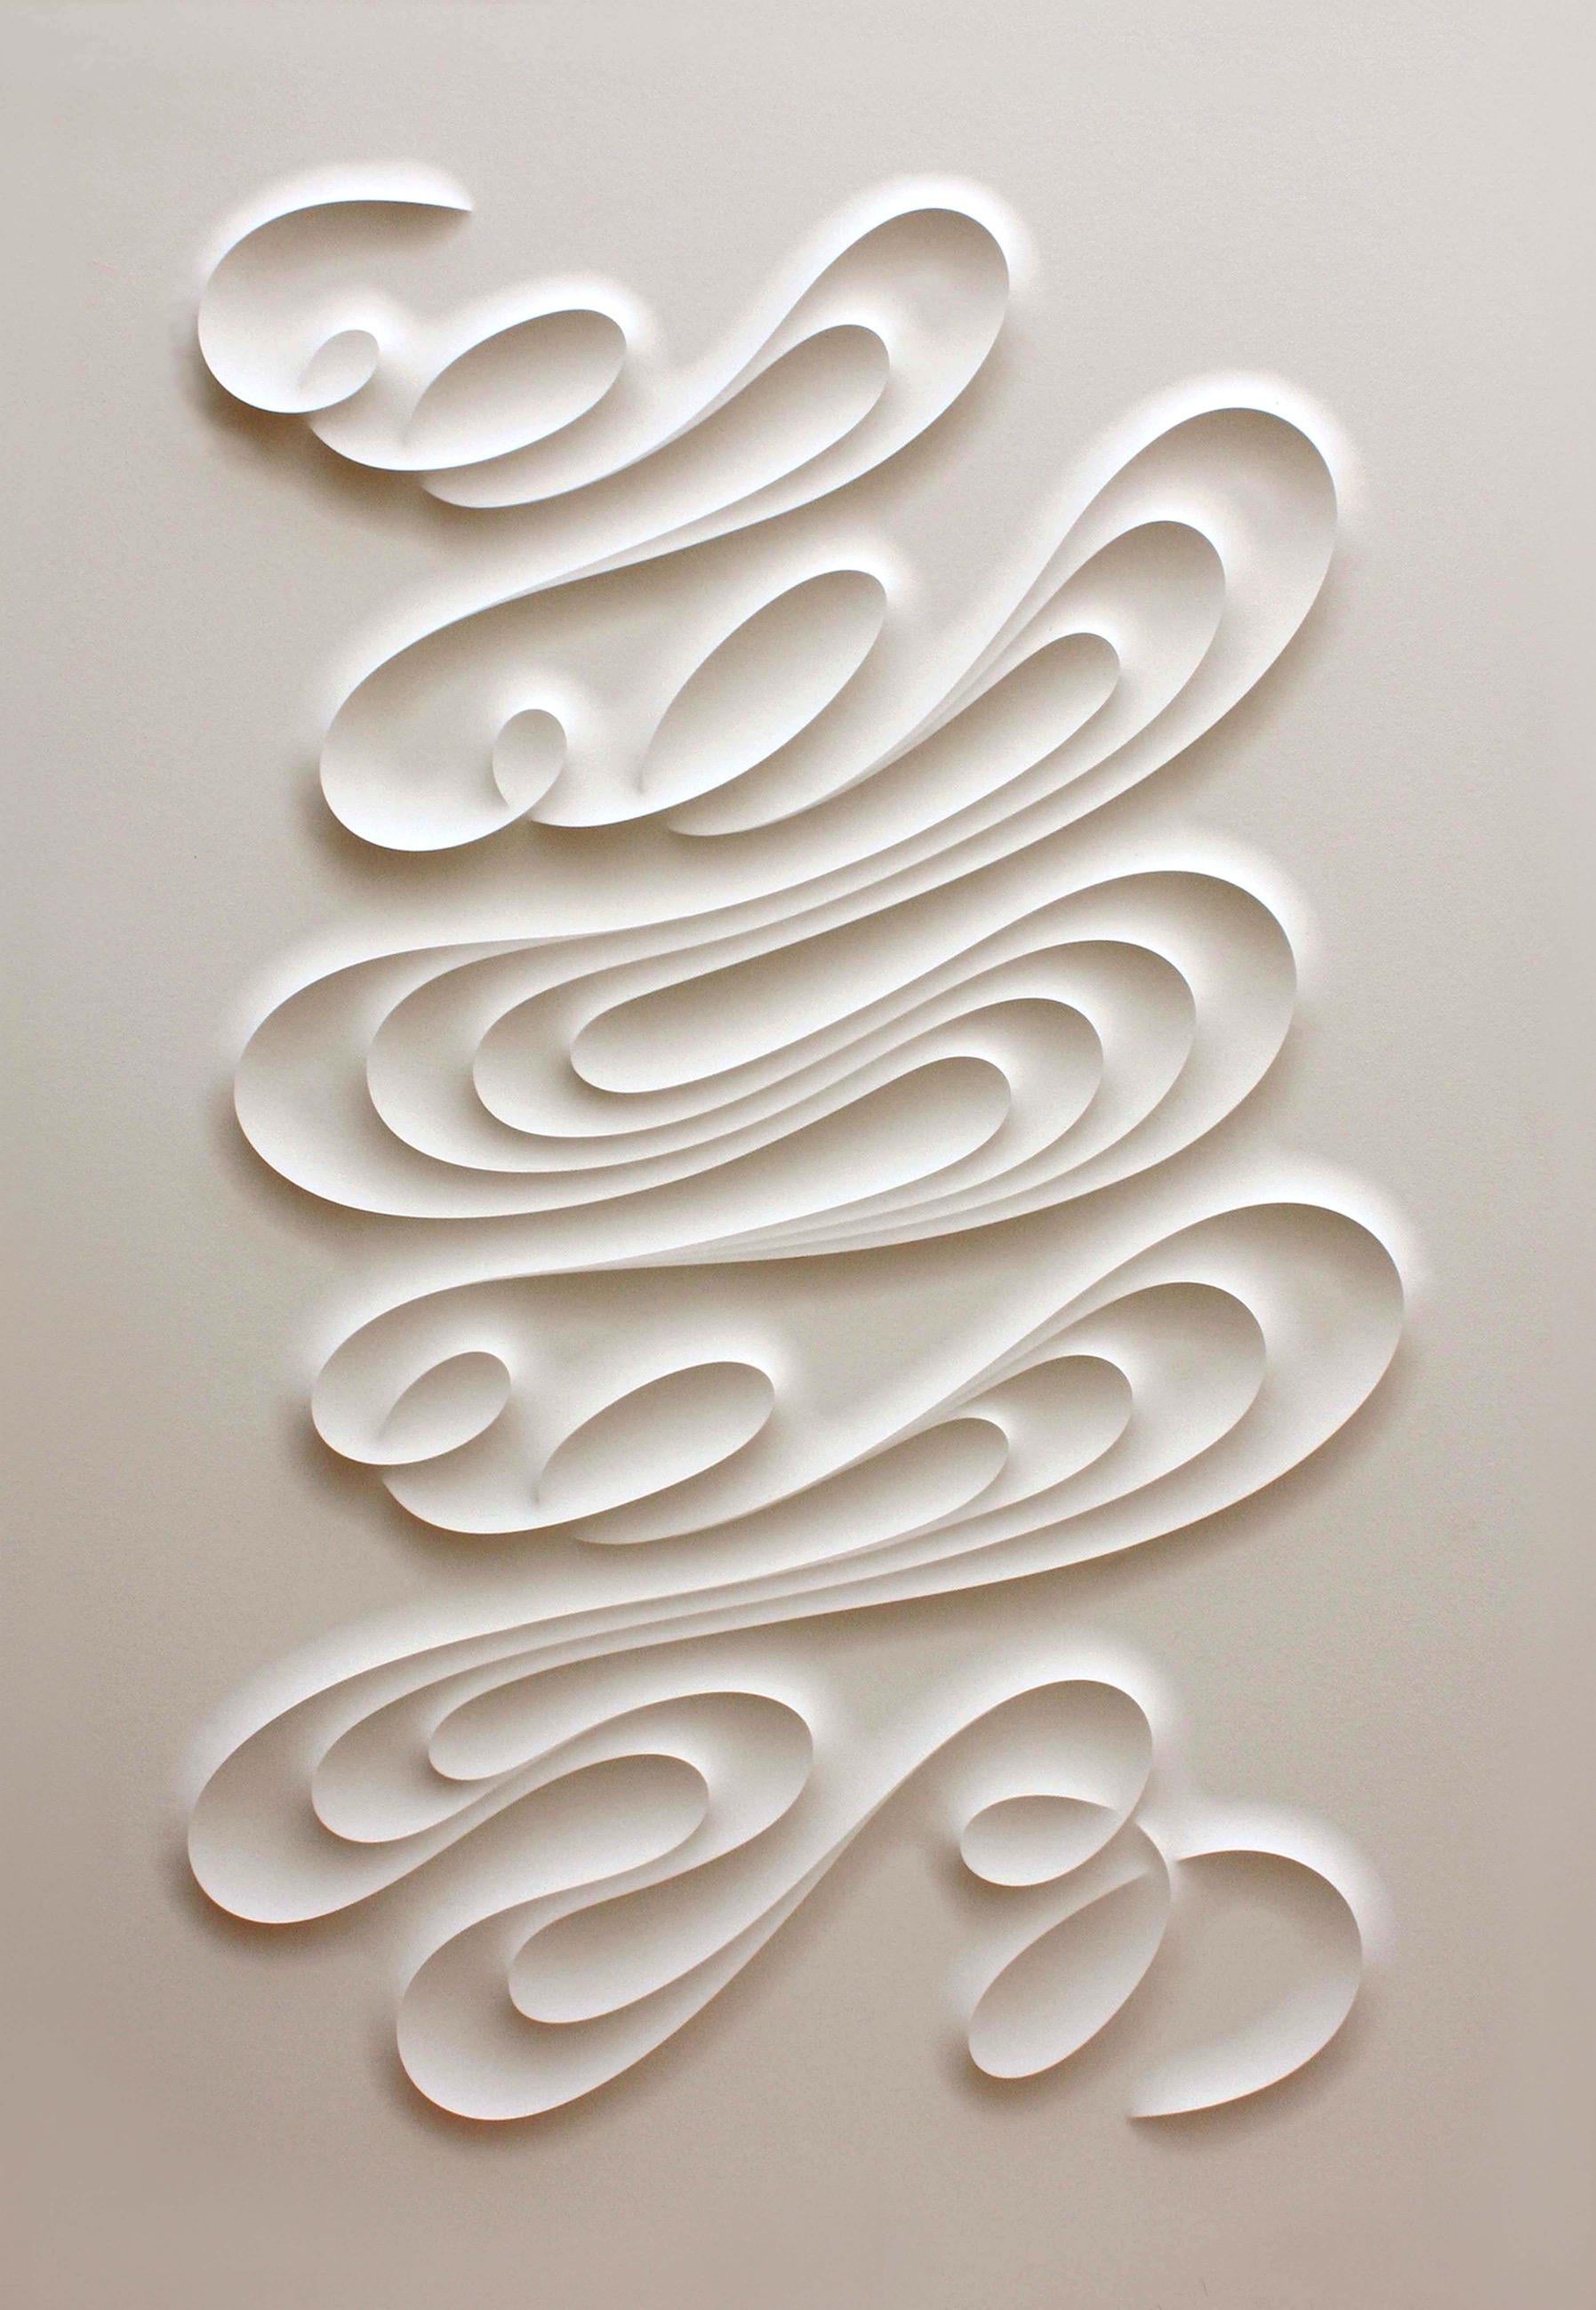 FESCM – geprägtes Papier, minimalistisches, geschwungenes, weißes Kunstwerk in Kurvenform, Jacinto Moros